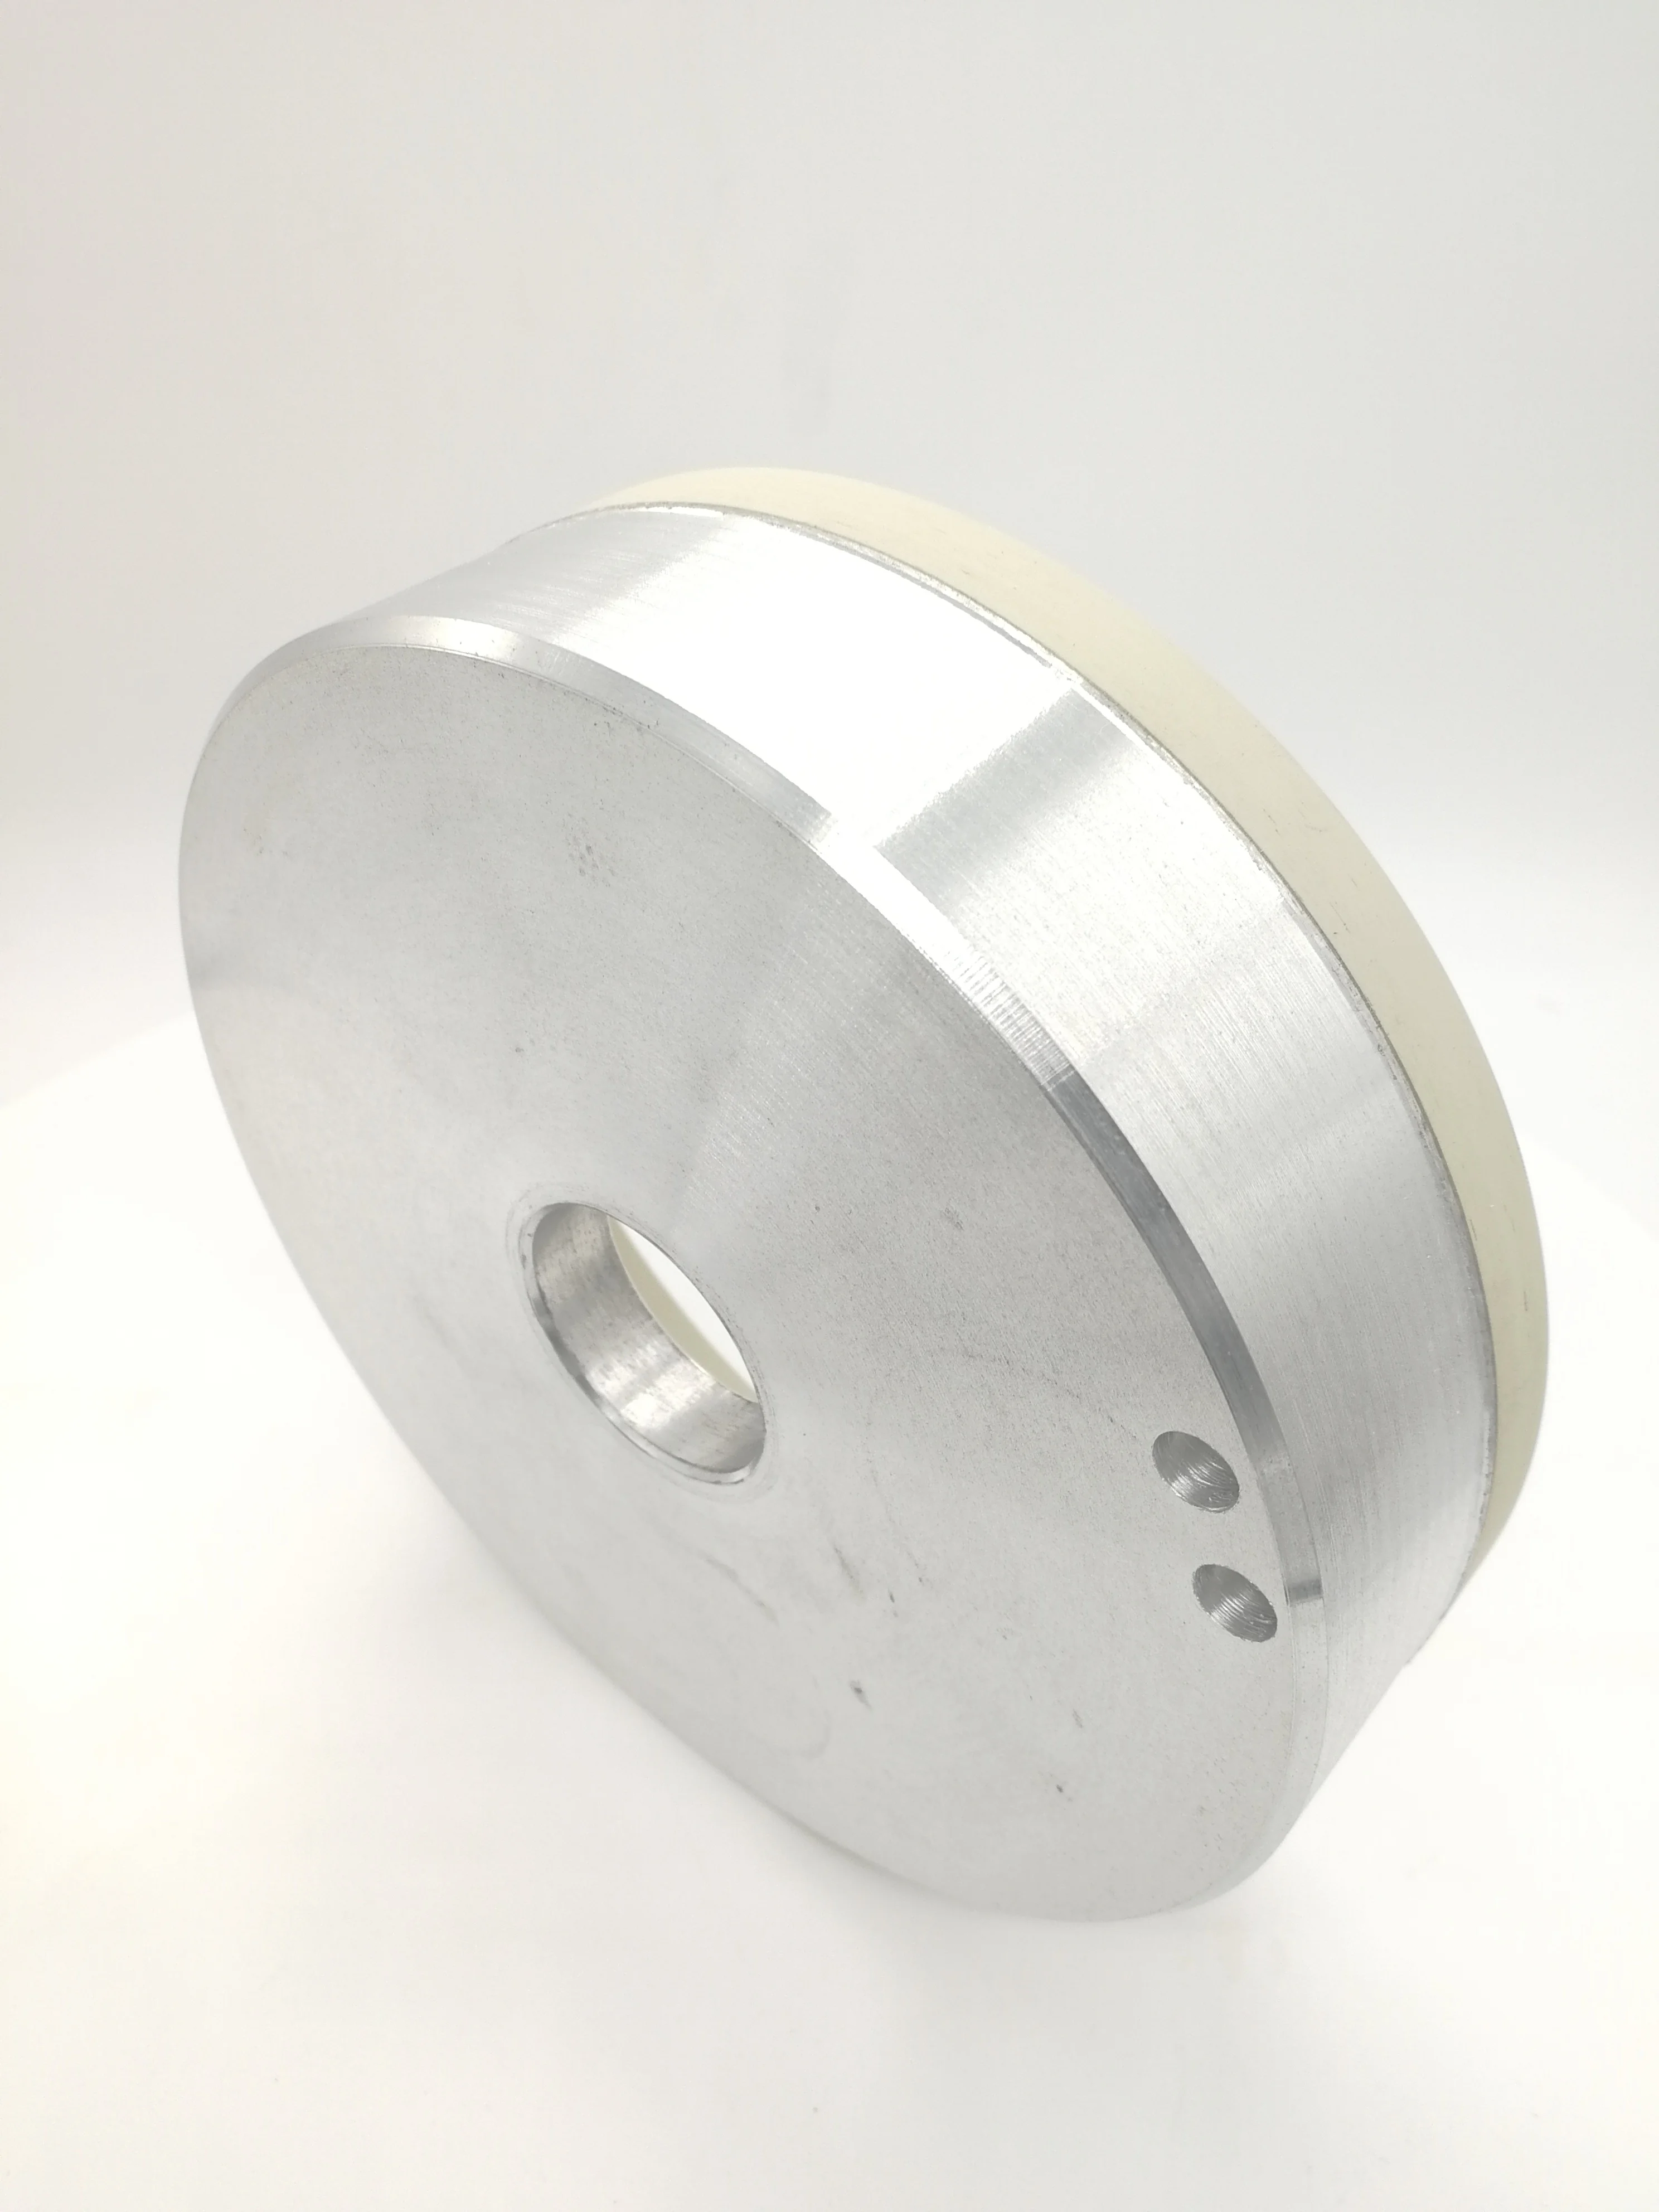 Алмазный шлифовальный круг для шлифования фотографий и пластинок с алмазным покрытием от AliExpress RU&CIS NEW